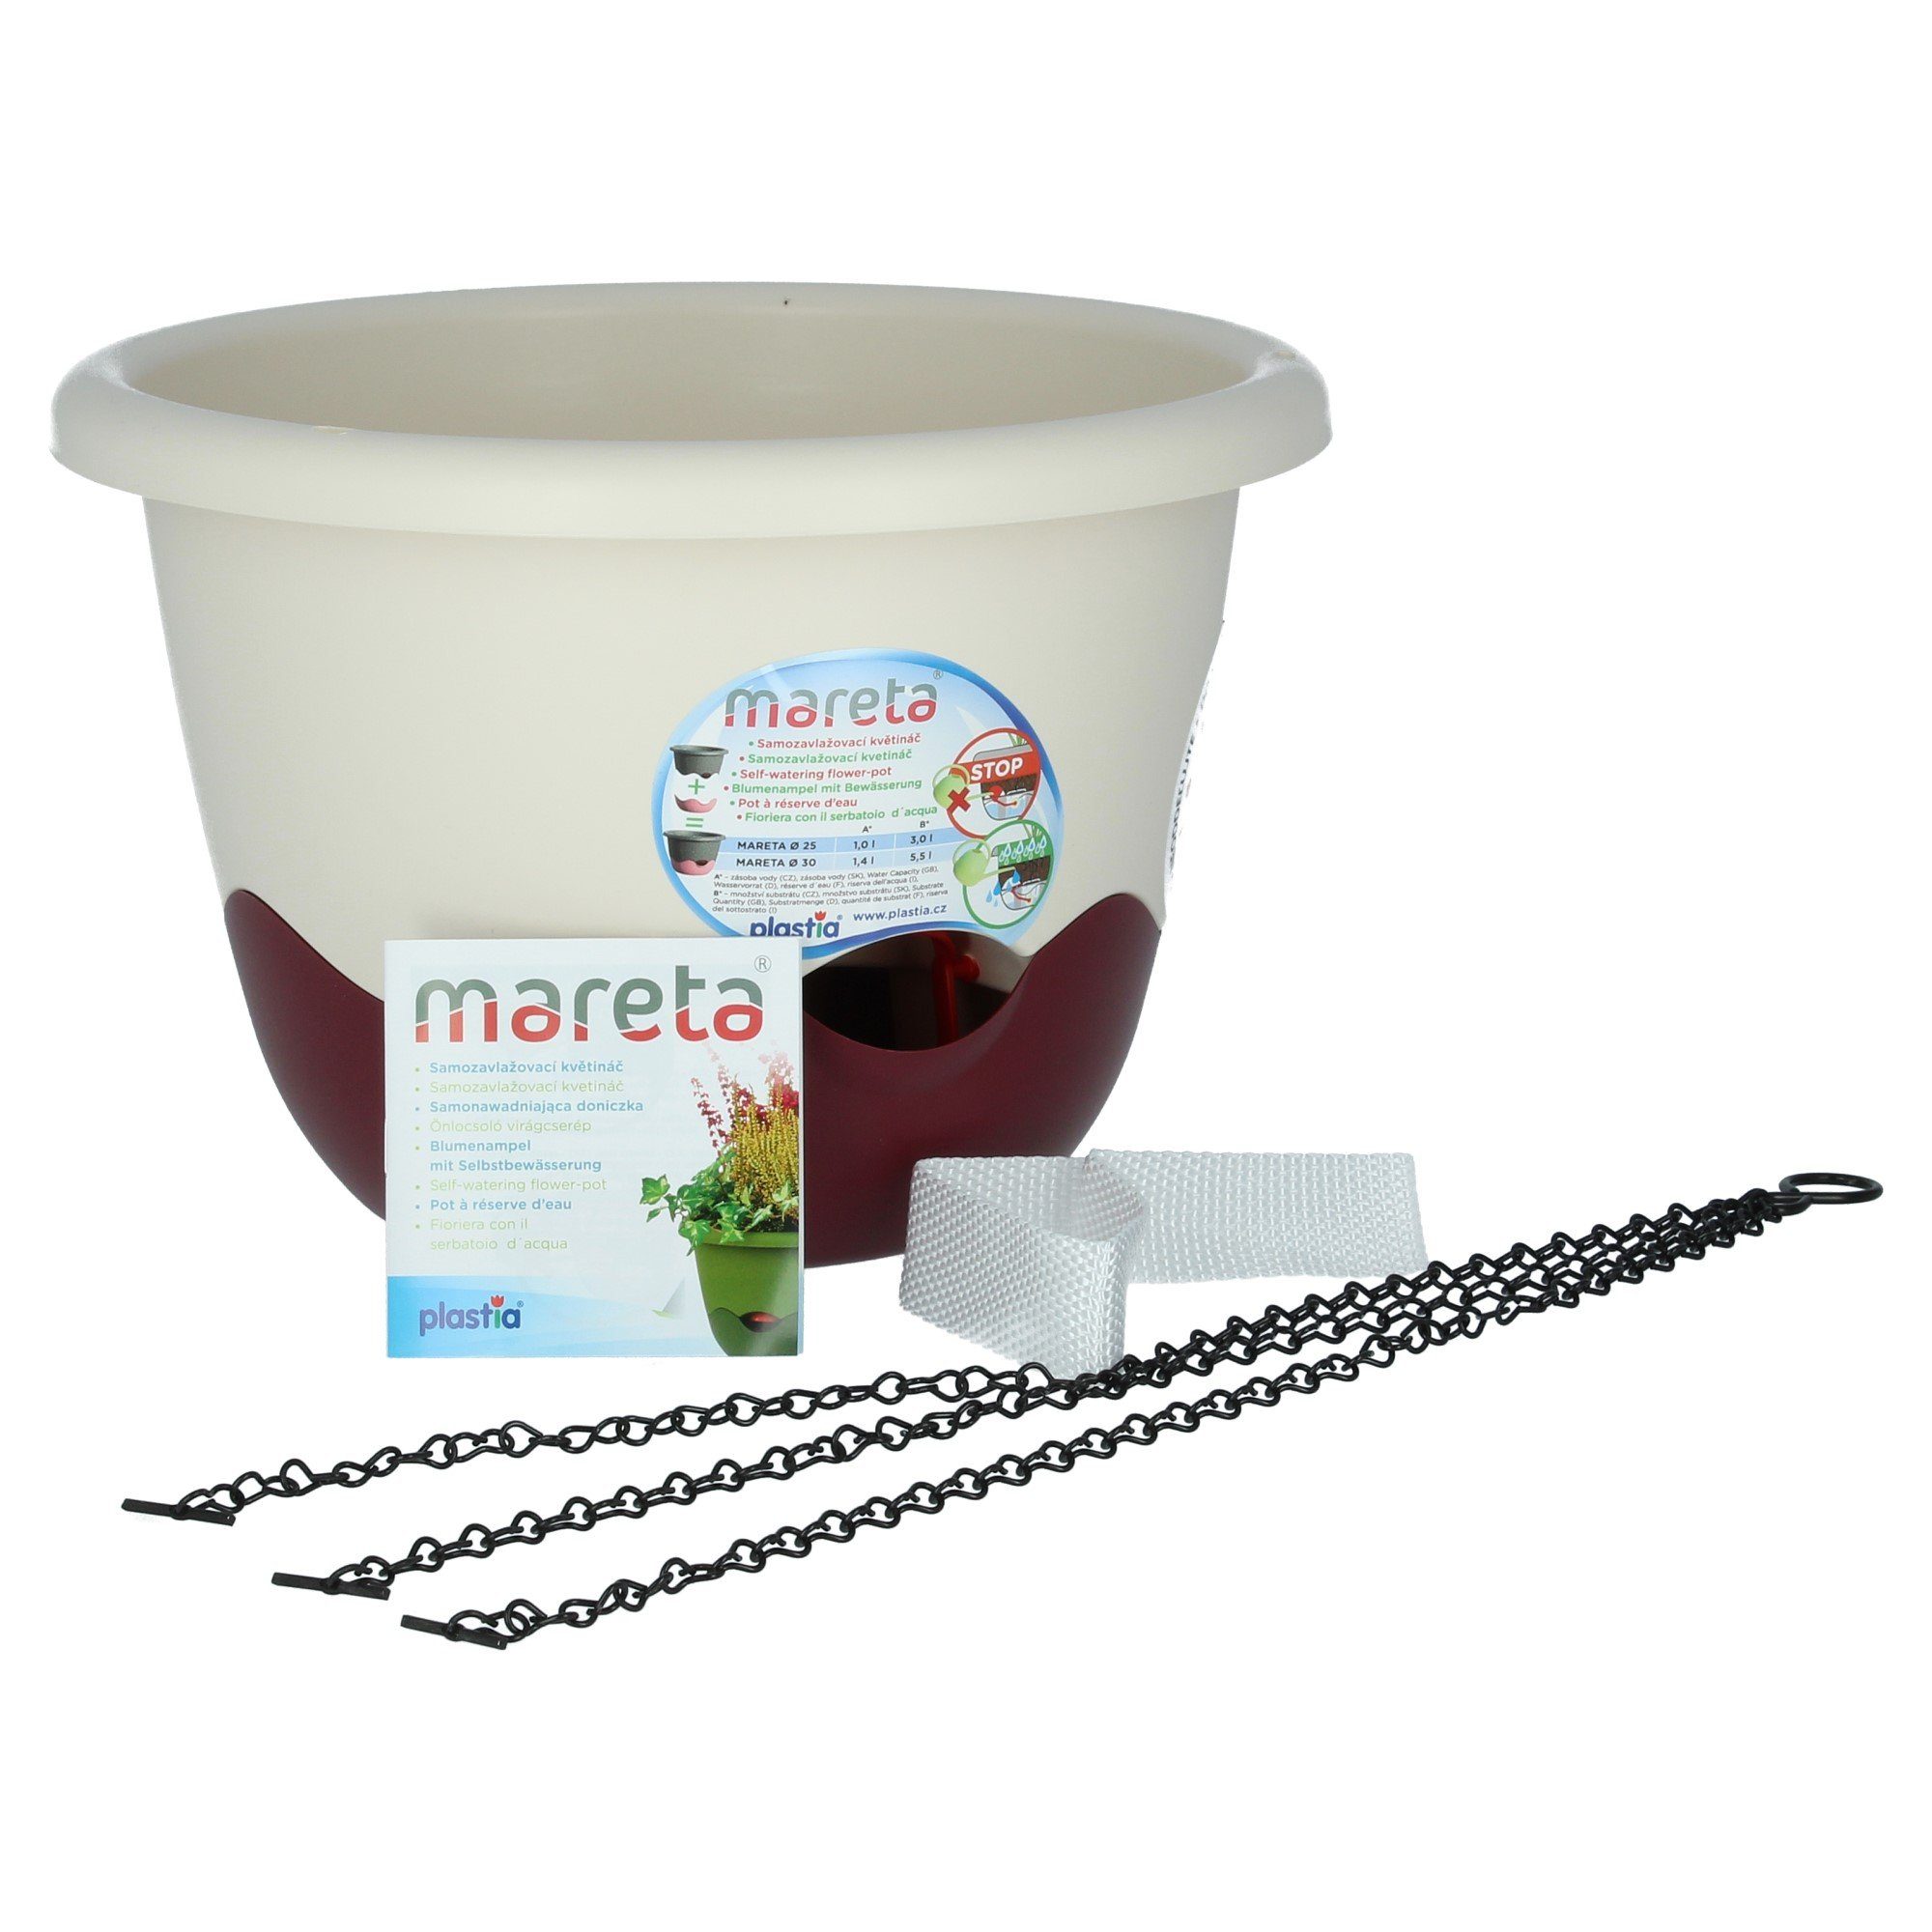 PLASTIA Blumentopf Mareta 30 Elfenbein / Weinrot mit Erdbewässerung (1 St)